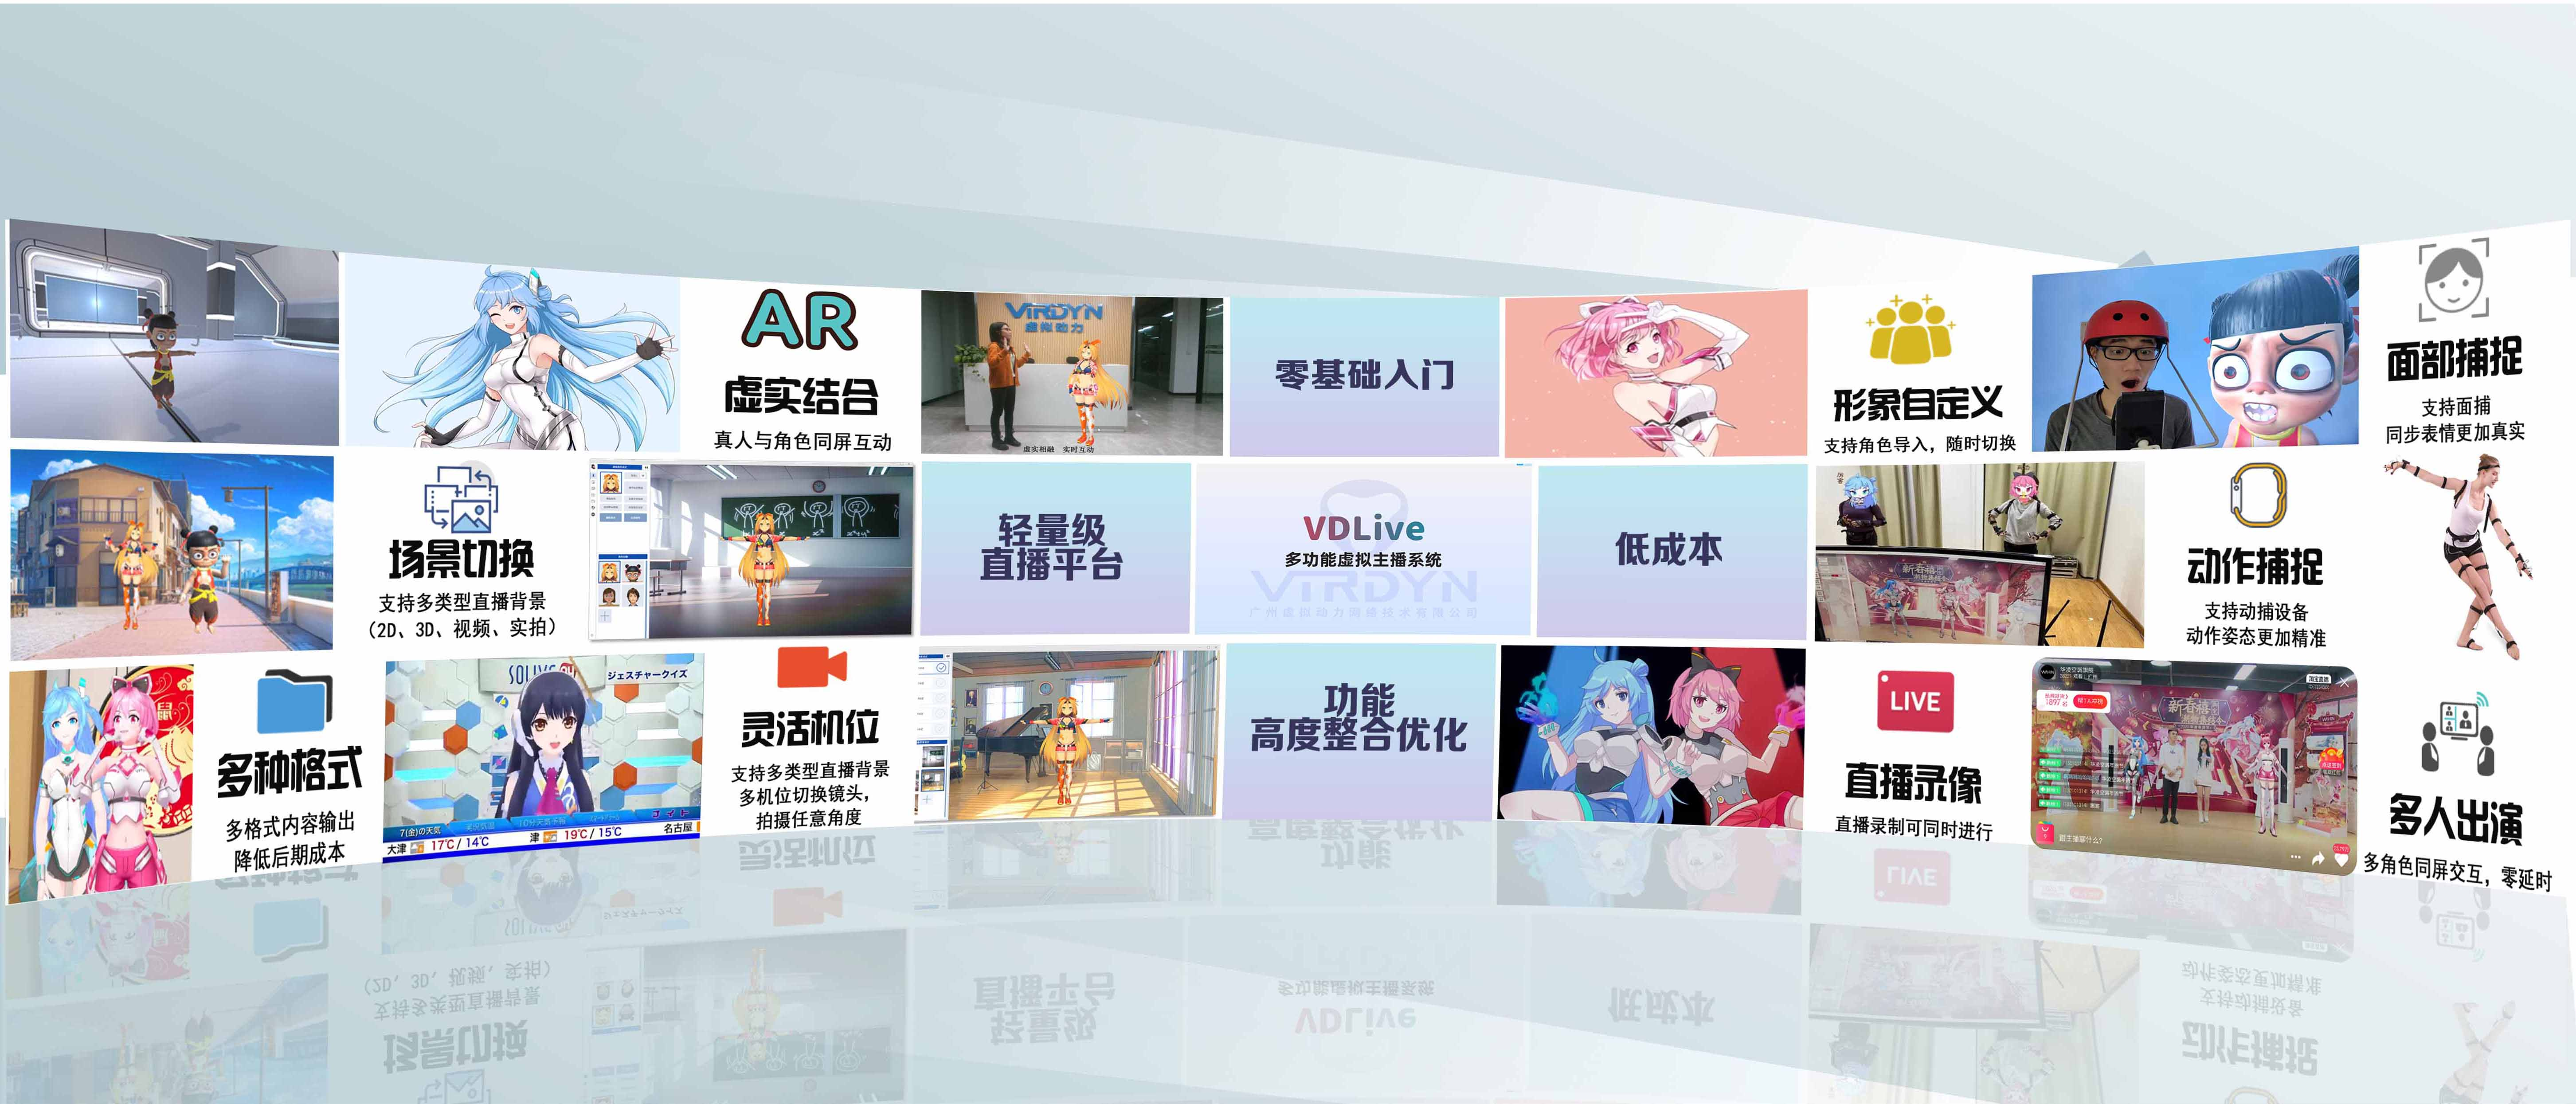 广州虚拟动力发布VDLive直播系统，助力千家虚拟主播轻松运营